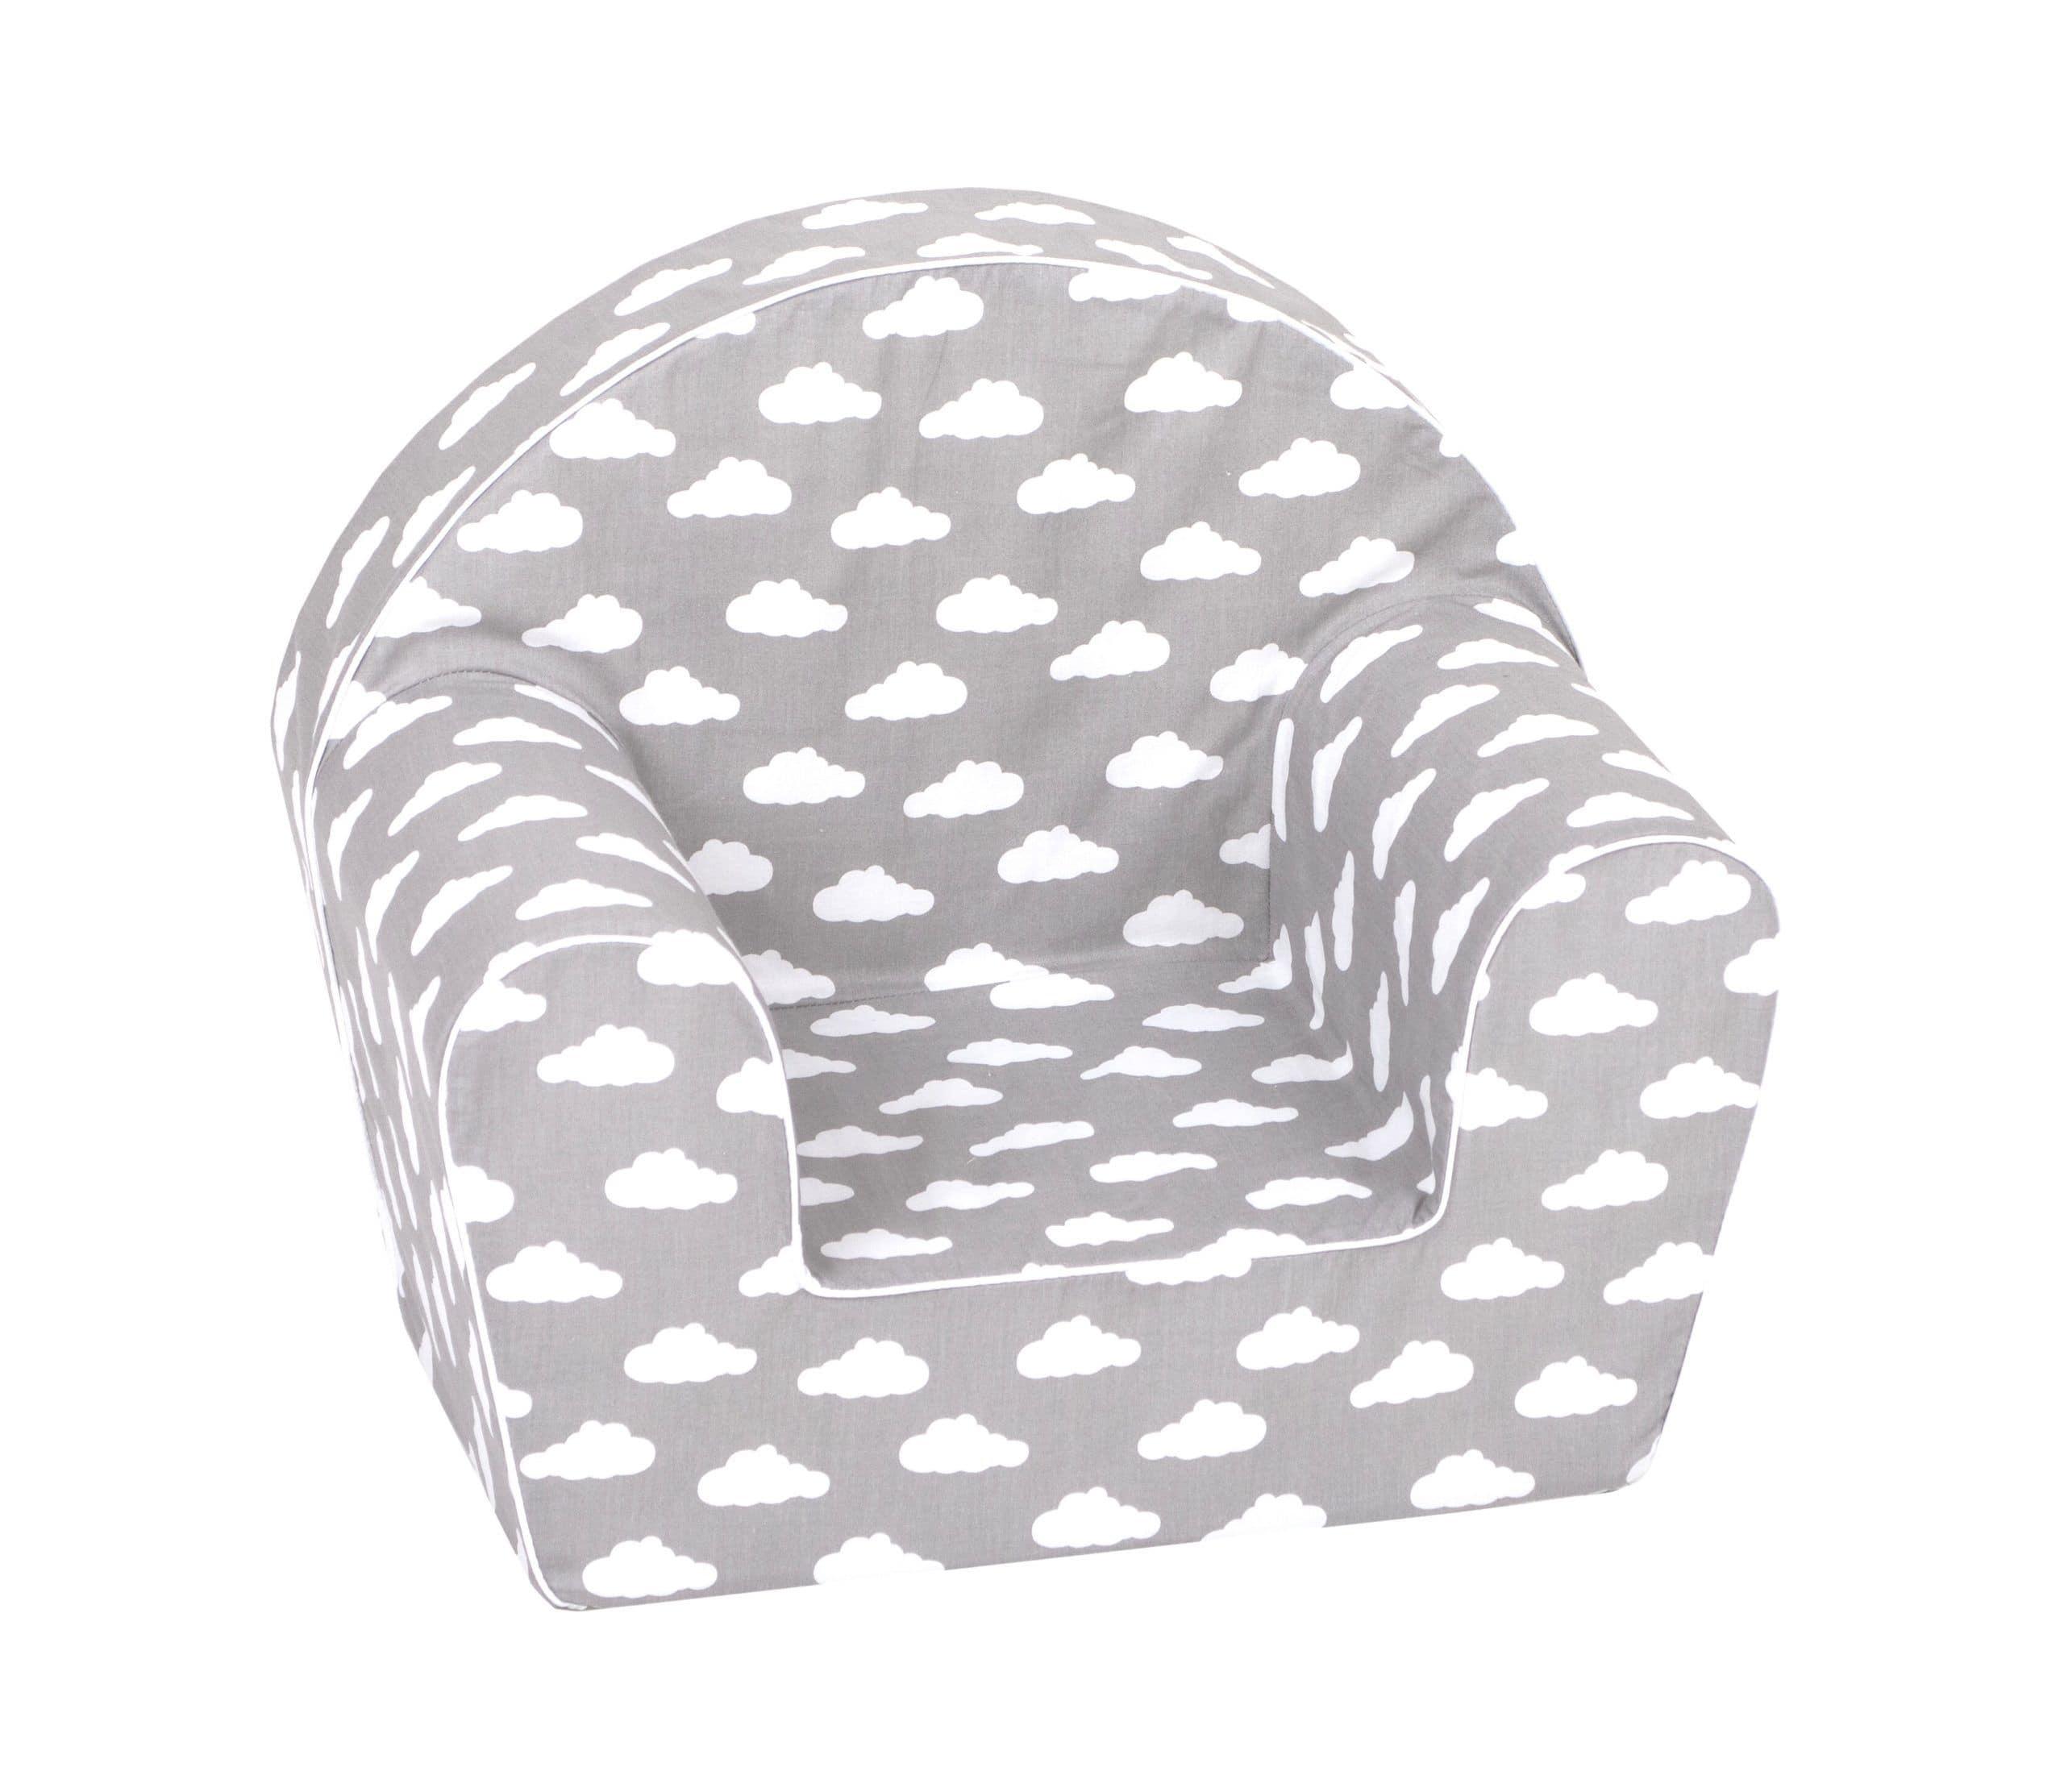 أريكة Delsit Arm Chair - رمادي برسومات غيوم بيضاء